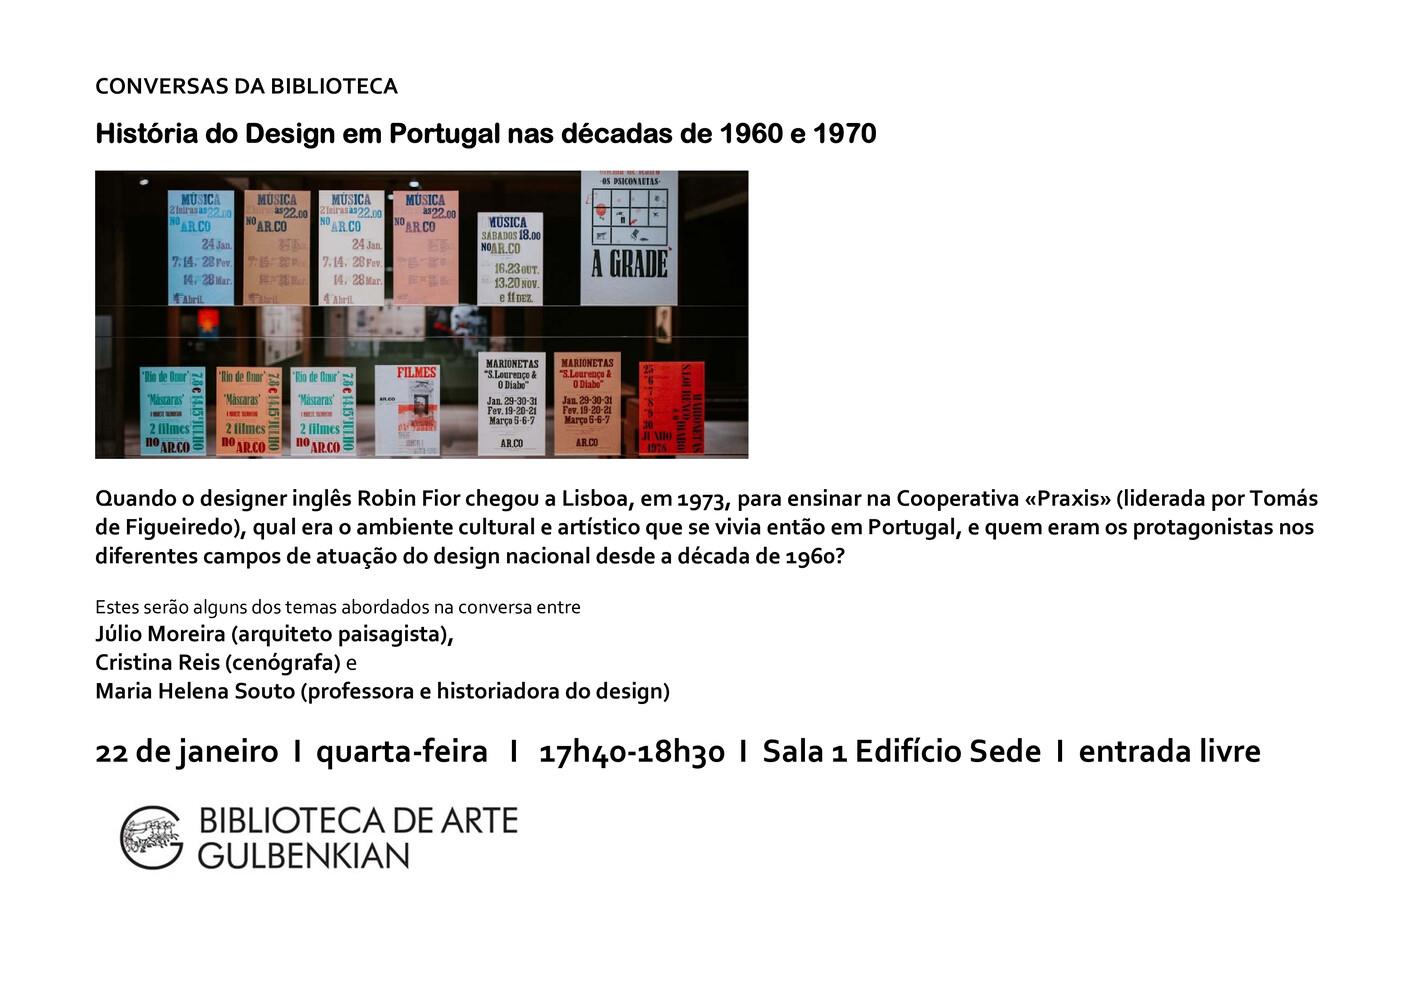 História do Design em Portugal nas Décadas de 1960 e 1970 [conferência]